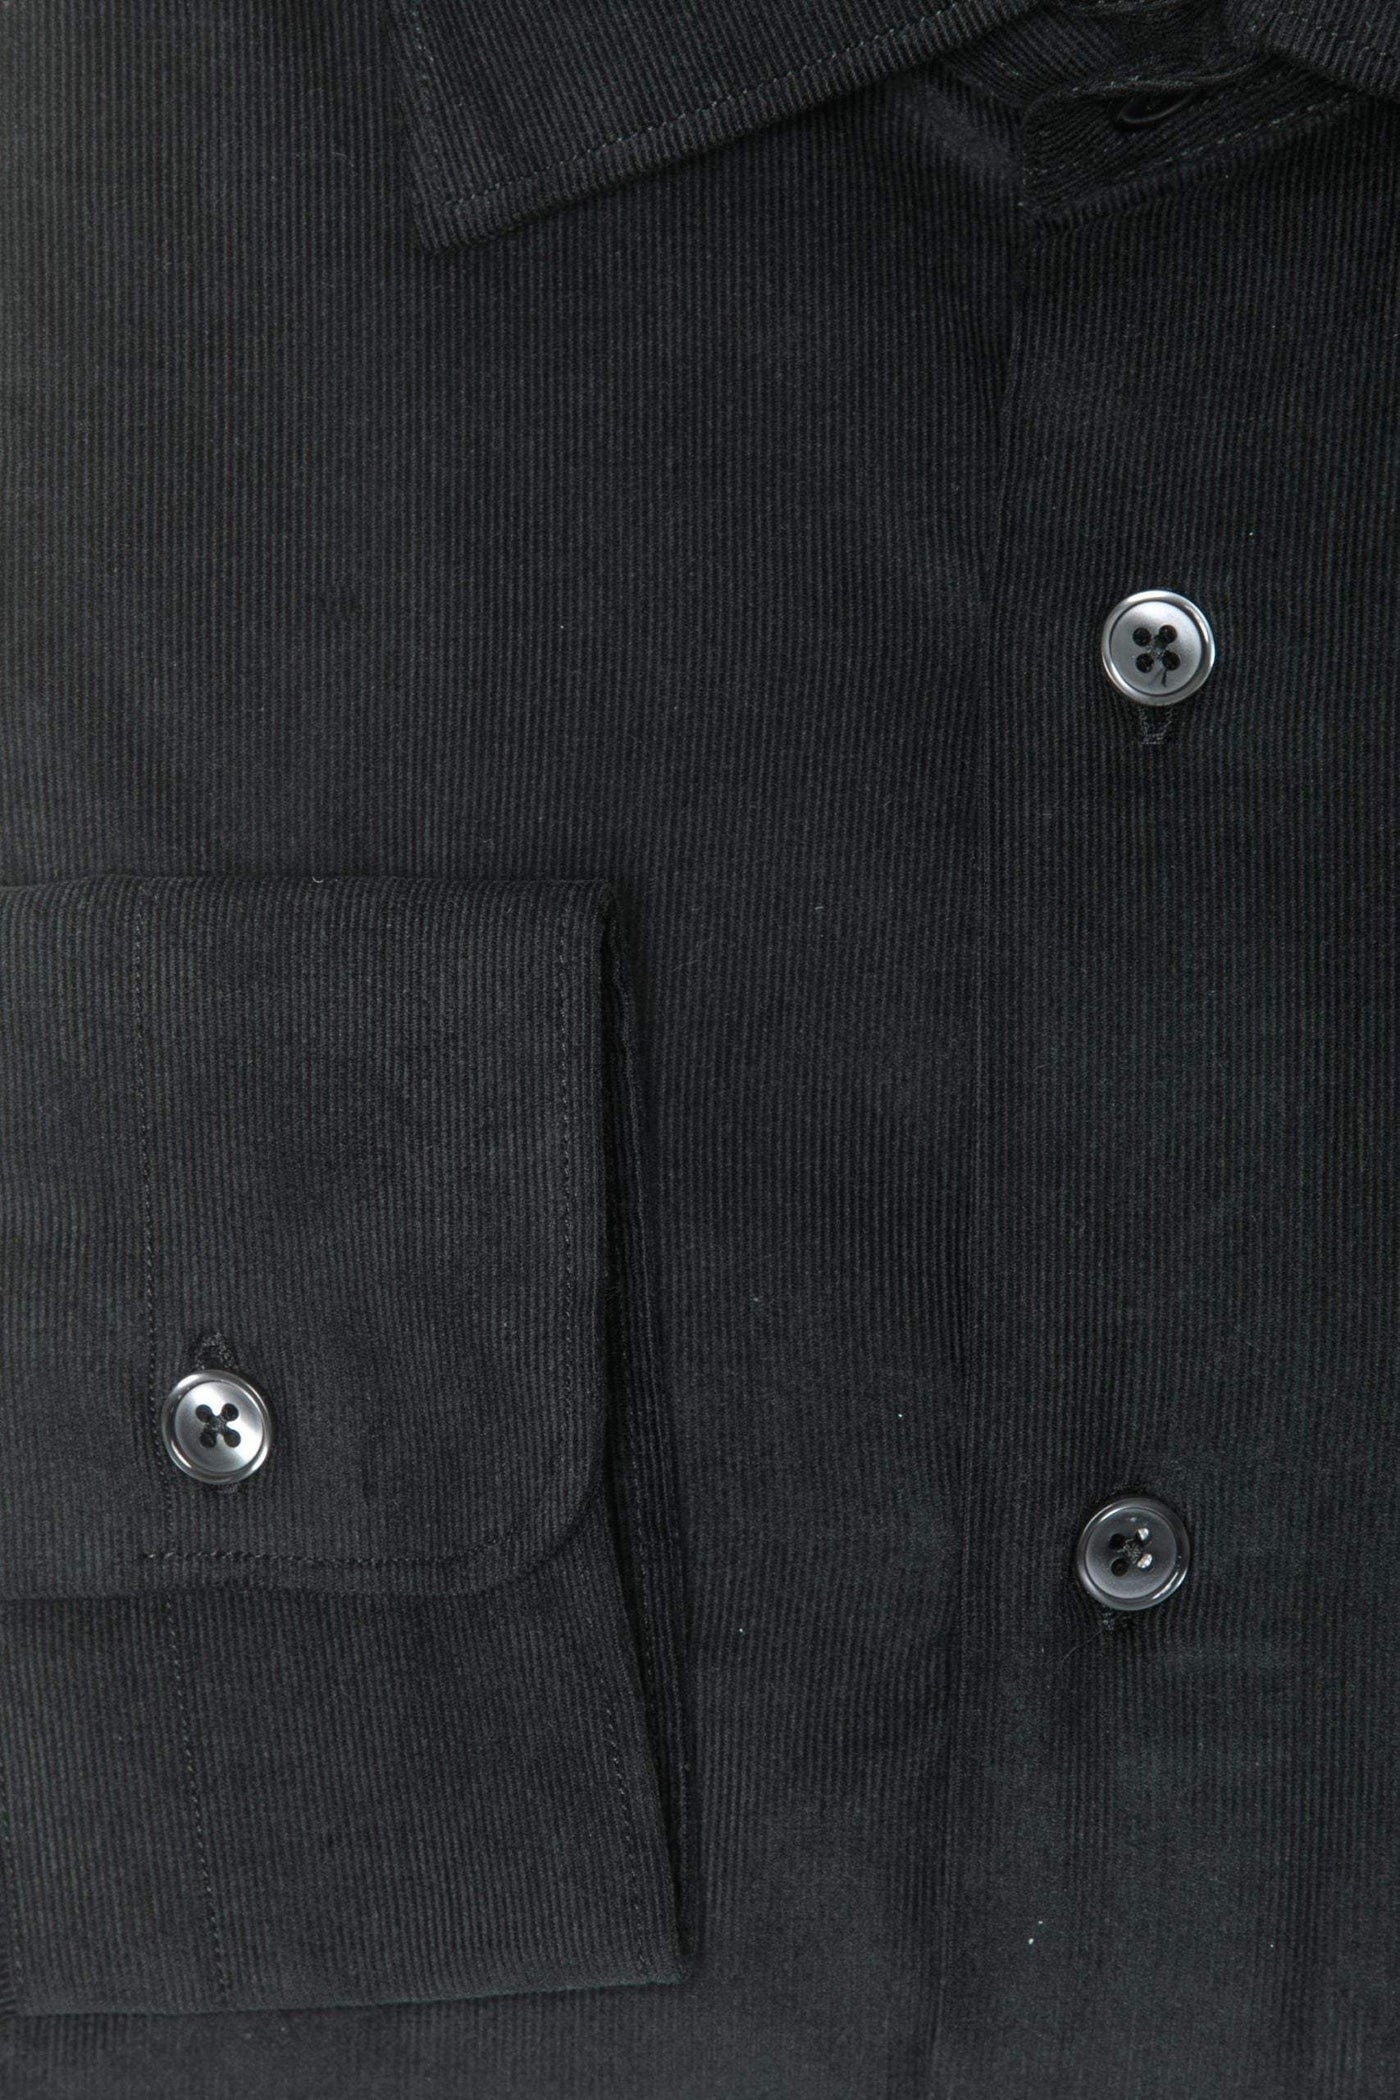 Robert Friedman Black Cotton Shirt #men, Black, feed-1, IT39 | S, IT40 | M, IT41 | L, IT42 | XL, Robert Friedman, Shirts - Men - Clothing at SEYMAYKA